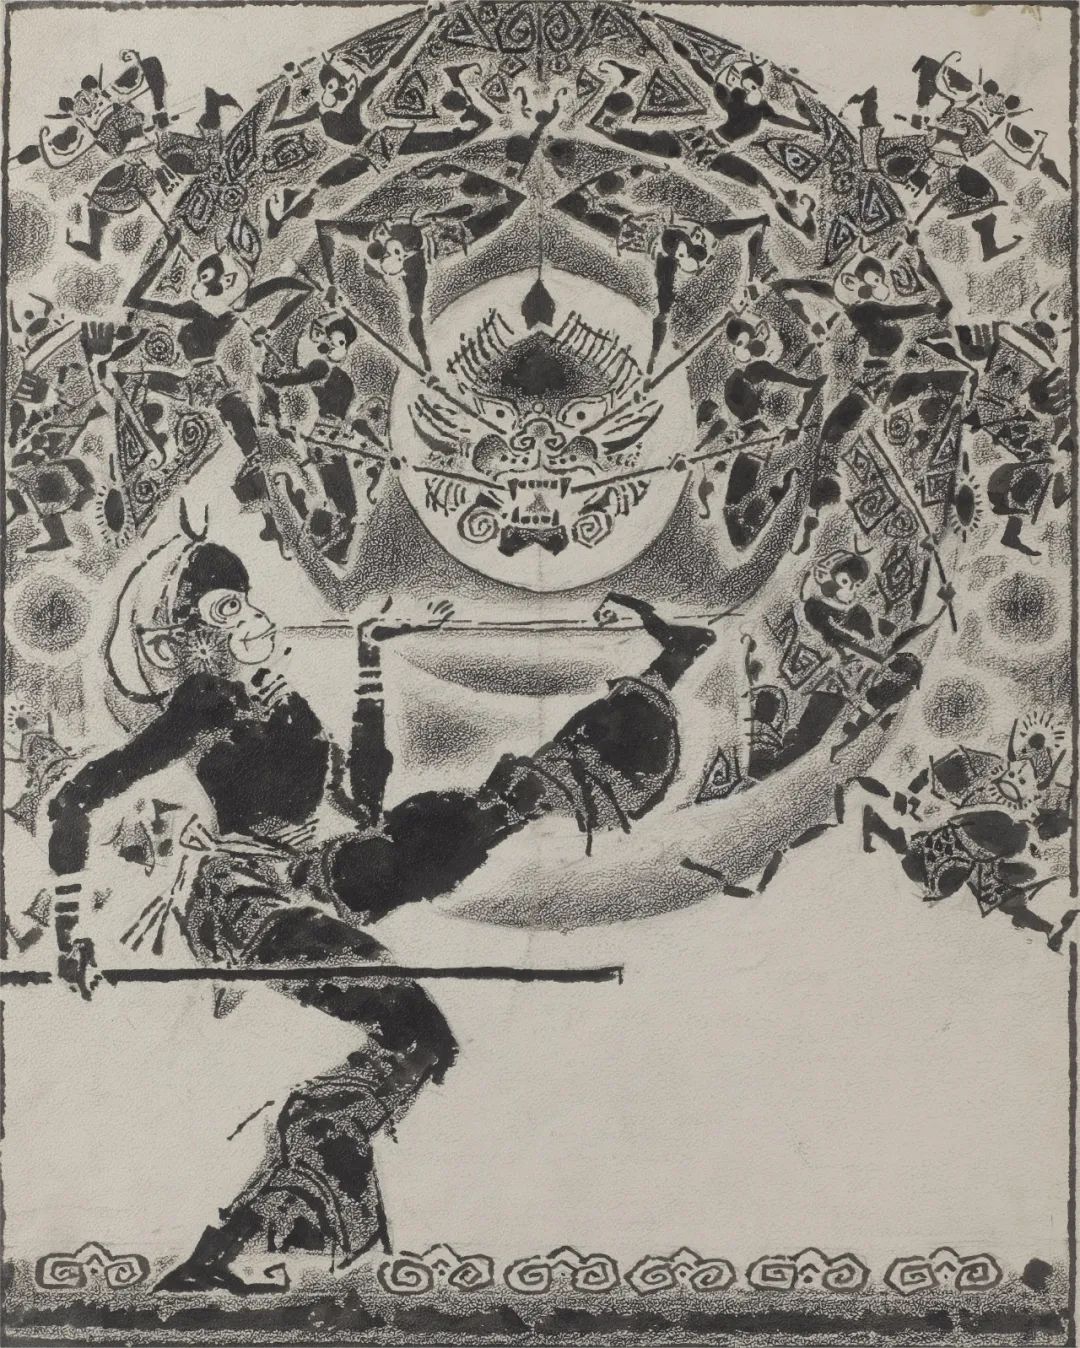 西游记 古干 插画  41×32.5cm 1983年 中国美术馆藏  原著 吴承恩《西游记》